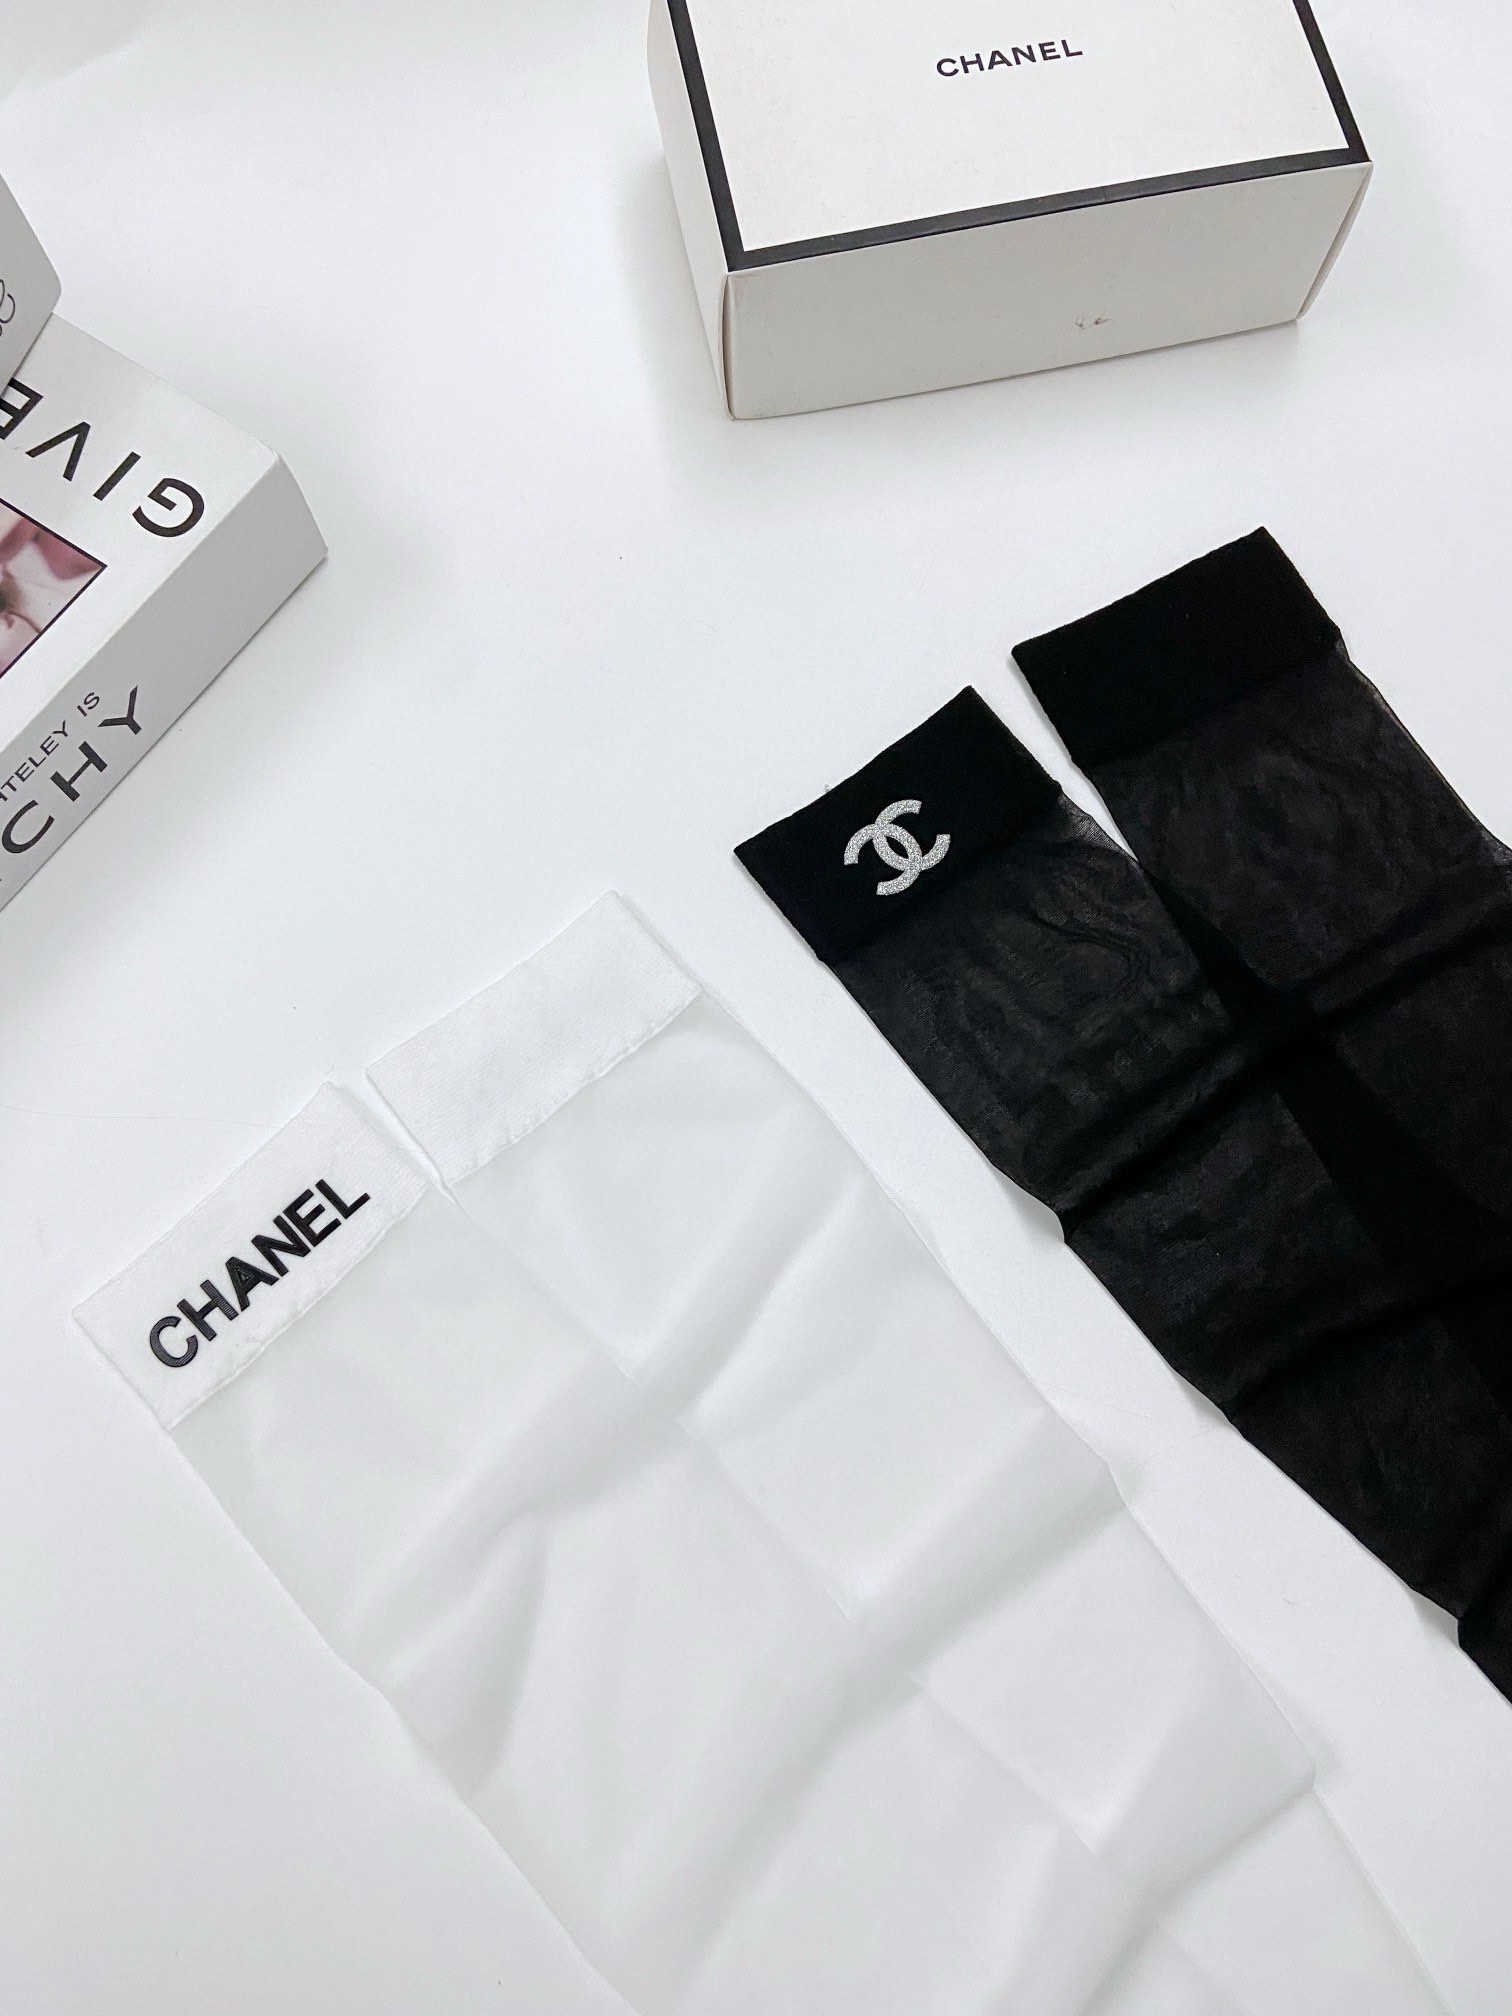 配包装一盒二双Chanel香奈儿爆款卡丝丝袜中筒袜高版本好看到爆炸夏季薄款欧美大牌中筒袜潮人必不能少的专